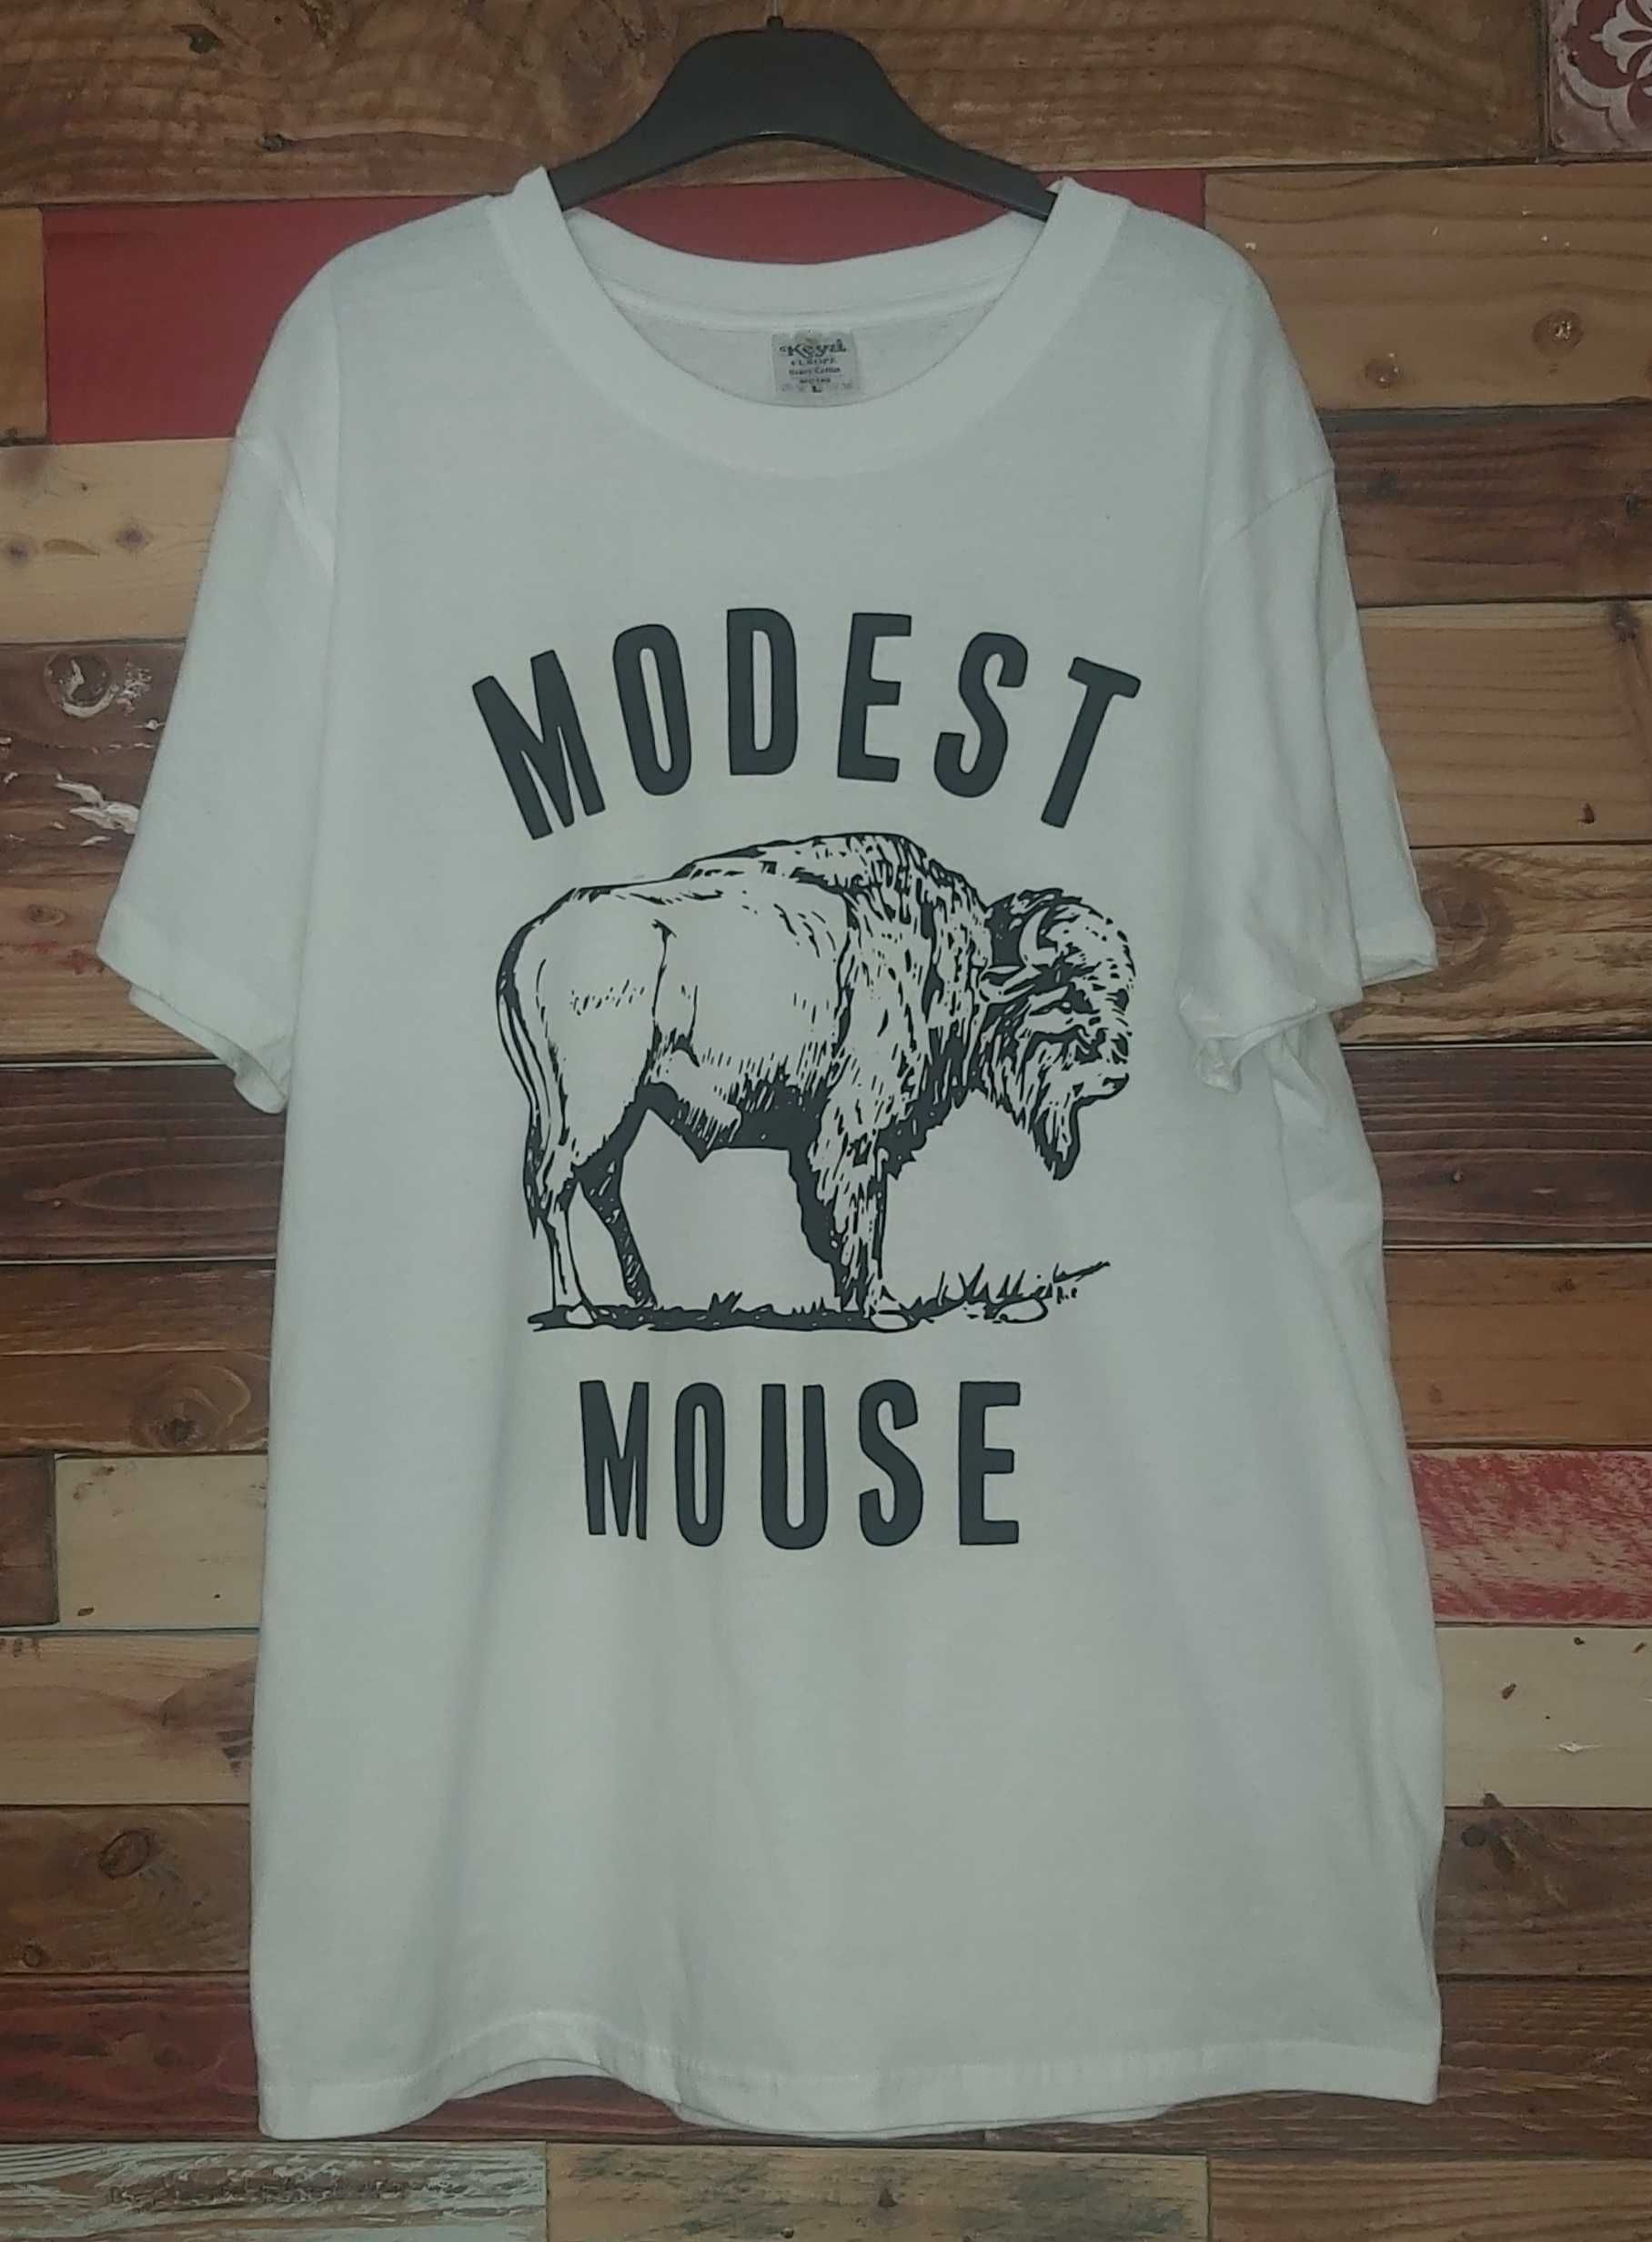 Elliott Smith / Daniel Johnston / Nick Drake / Modest Mouse - T-shirt